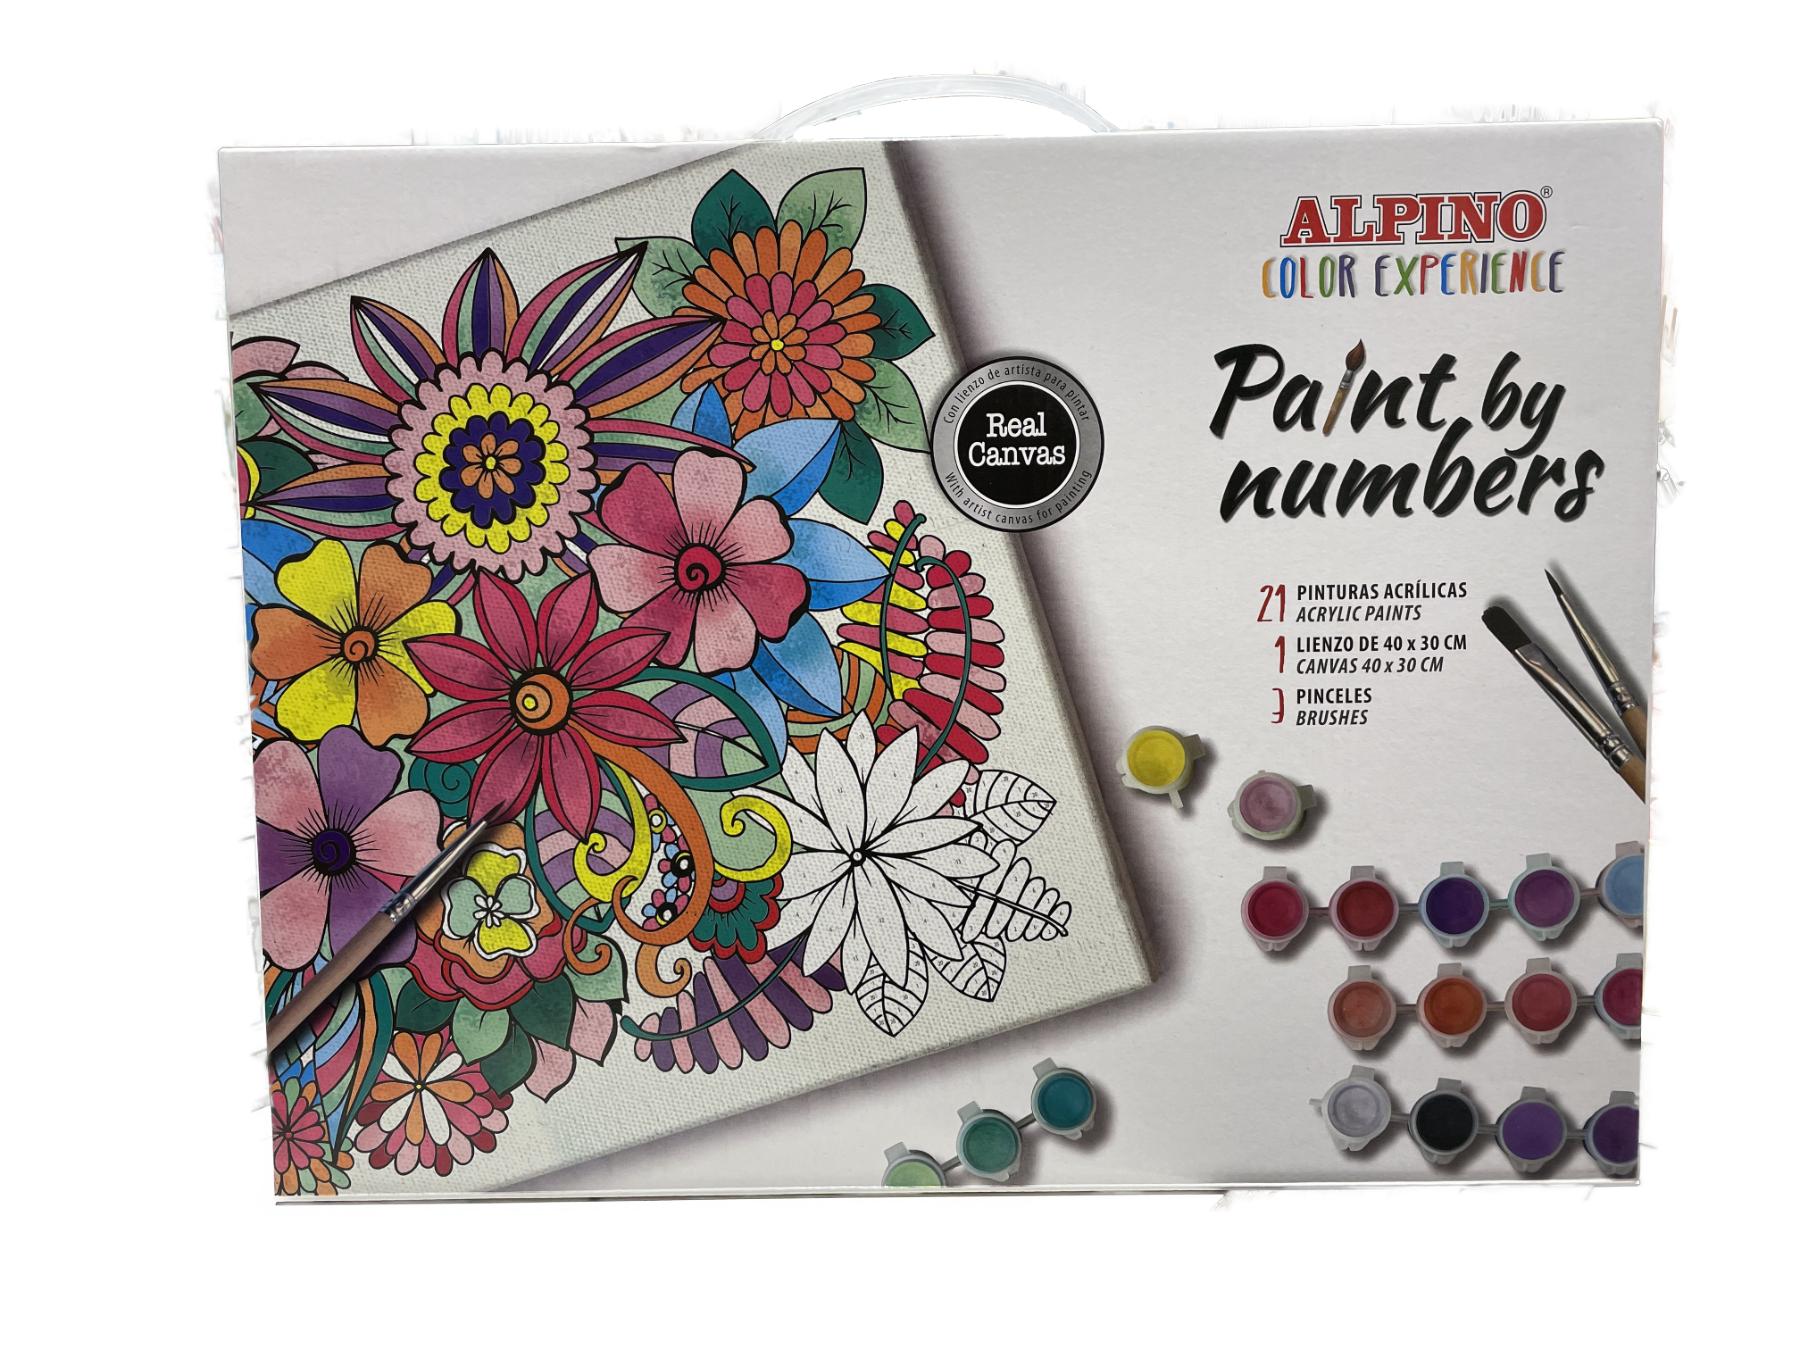 Numerarte – Lienzos listos con la técnica de pintar por números en Colombia